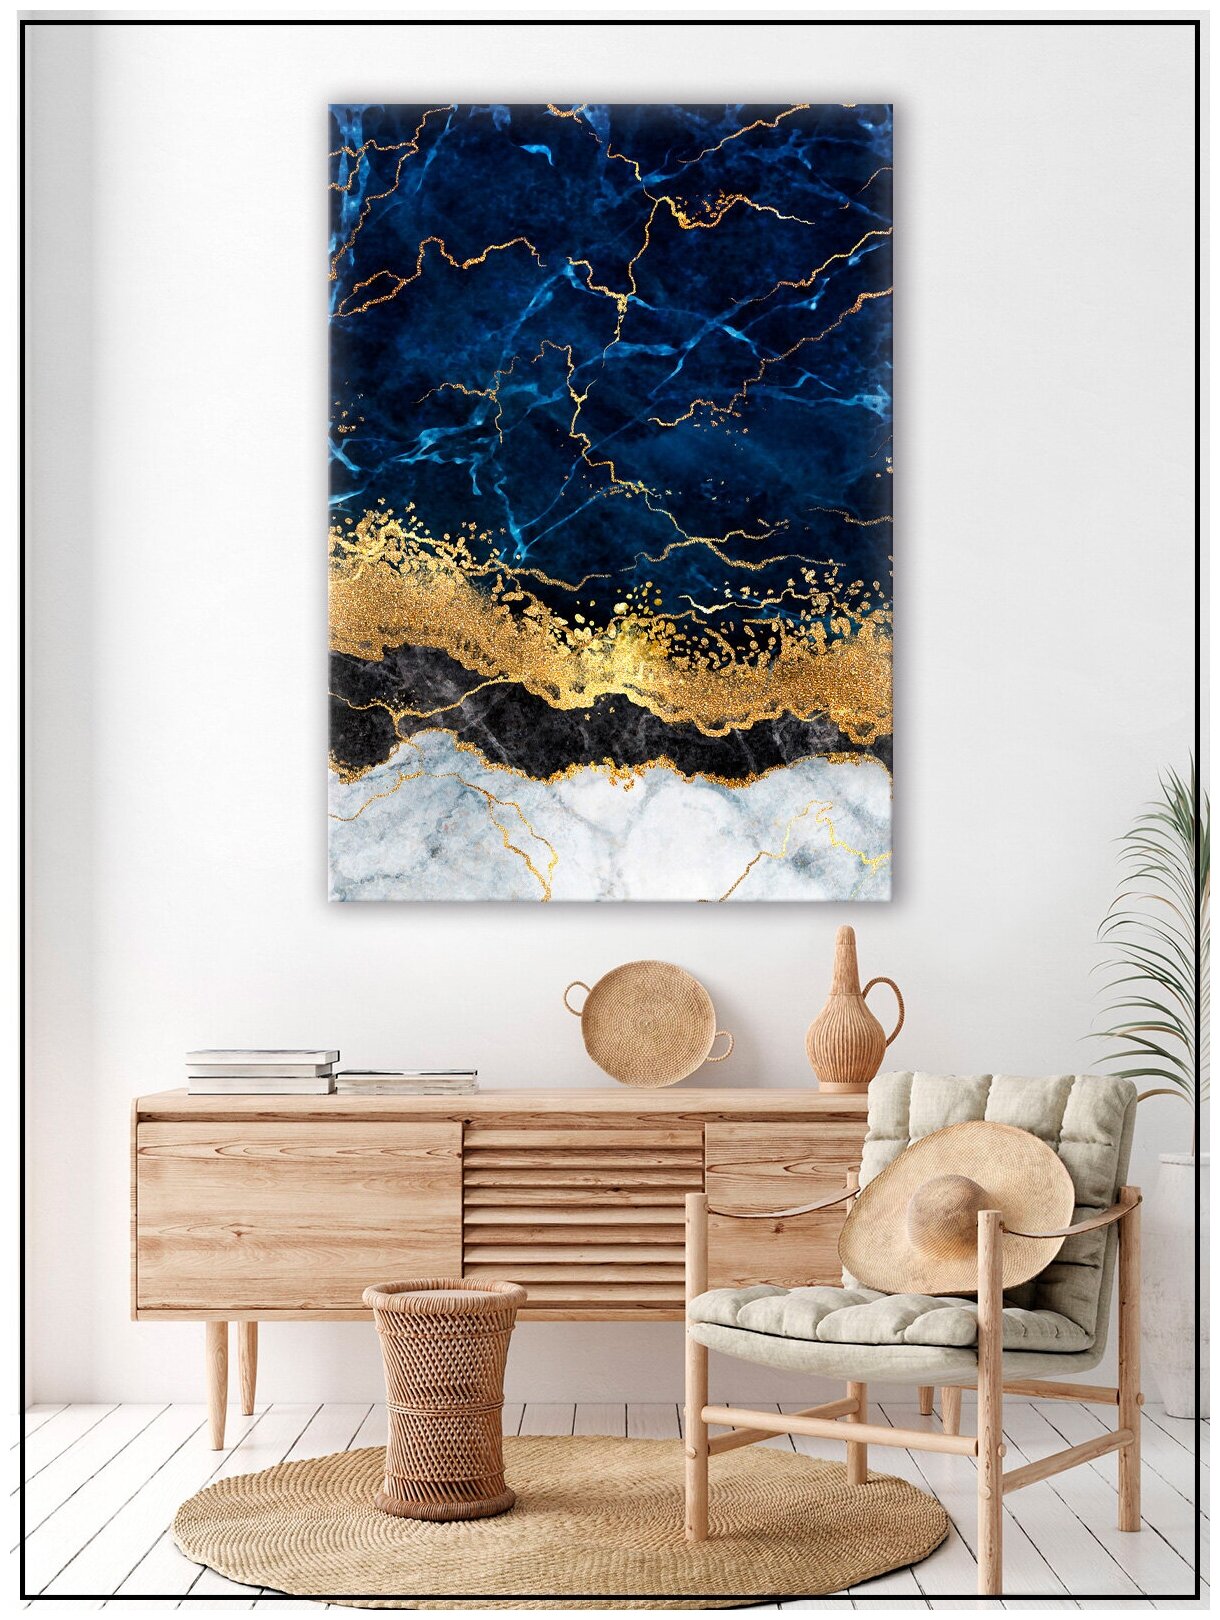 Картина для интерьера на натуральном хлопковом холсте "Абстракция синий мрамор с золотом", 30*40см, холст на подрамнике, картина в подарок